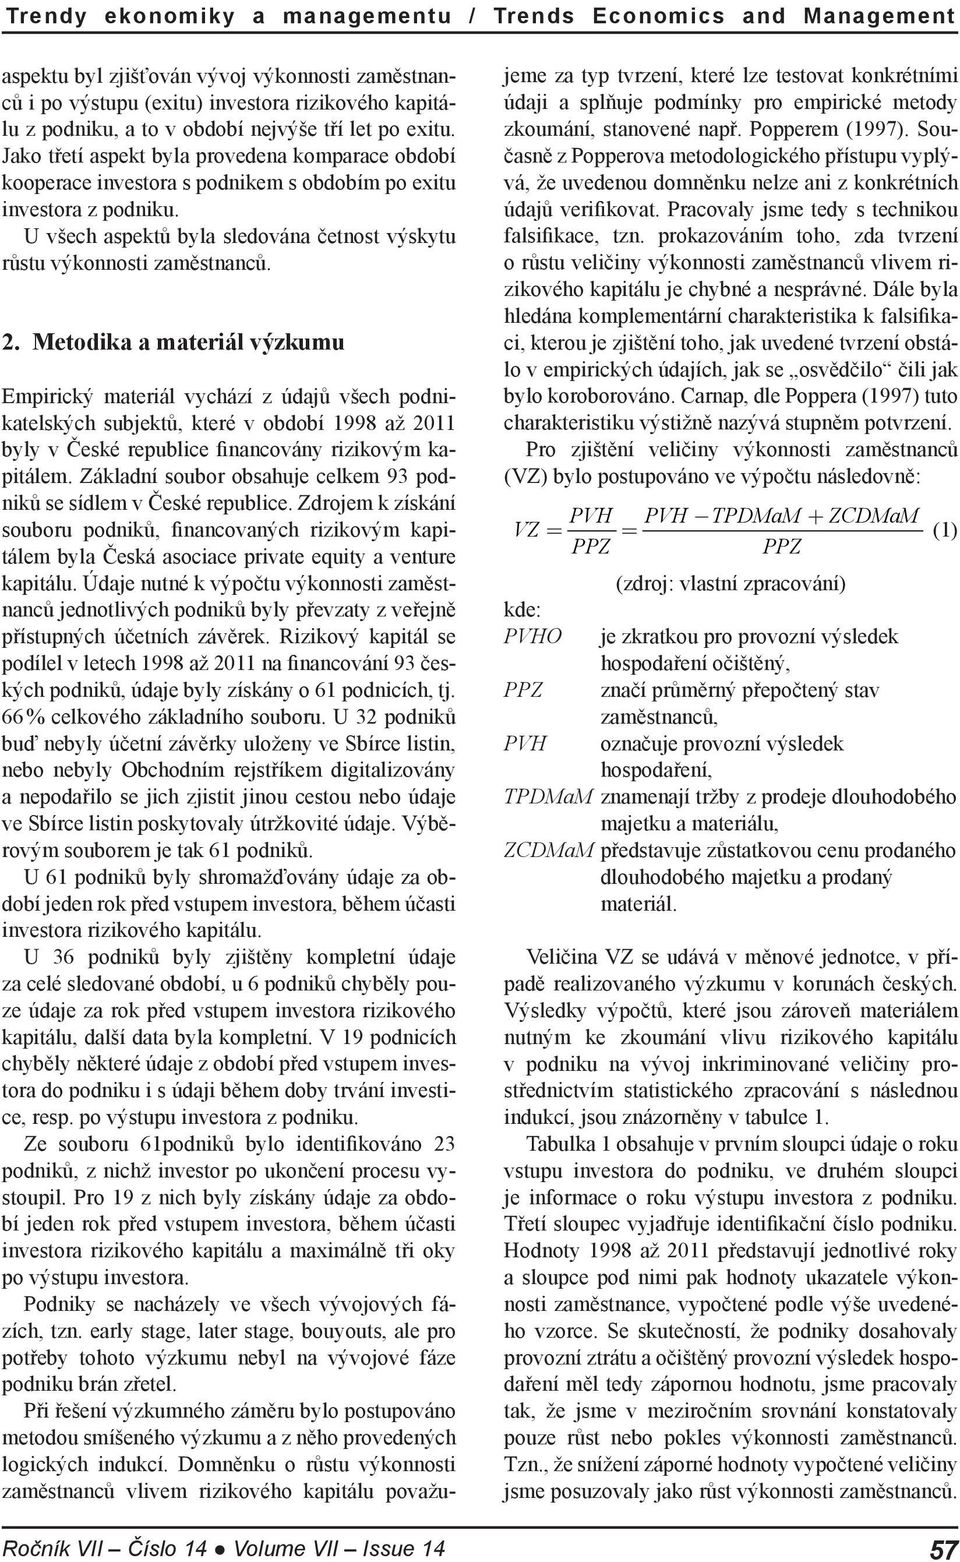 Metodika a materiál výzkumu Ročník VII Číslo 14 Volume VII Issue 14 Empirický materiál vychází z údajů všech podnikatelských subjektů, které v období 1998 až 2011 byly v České republice financovány